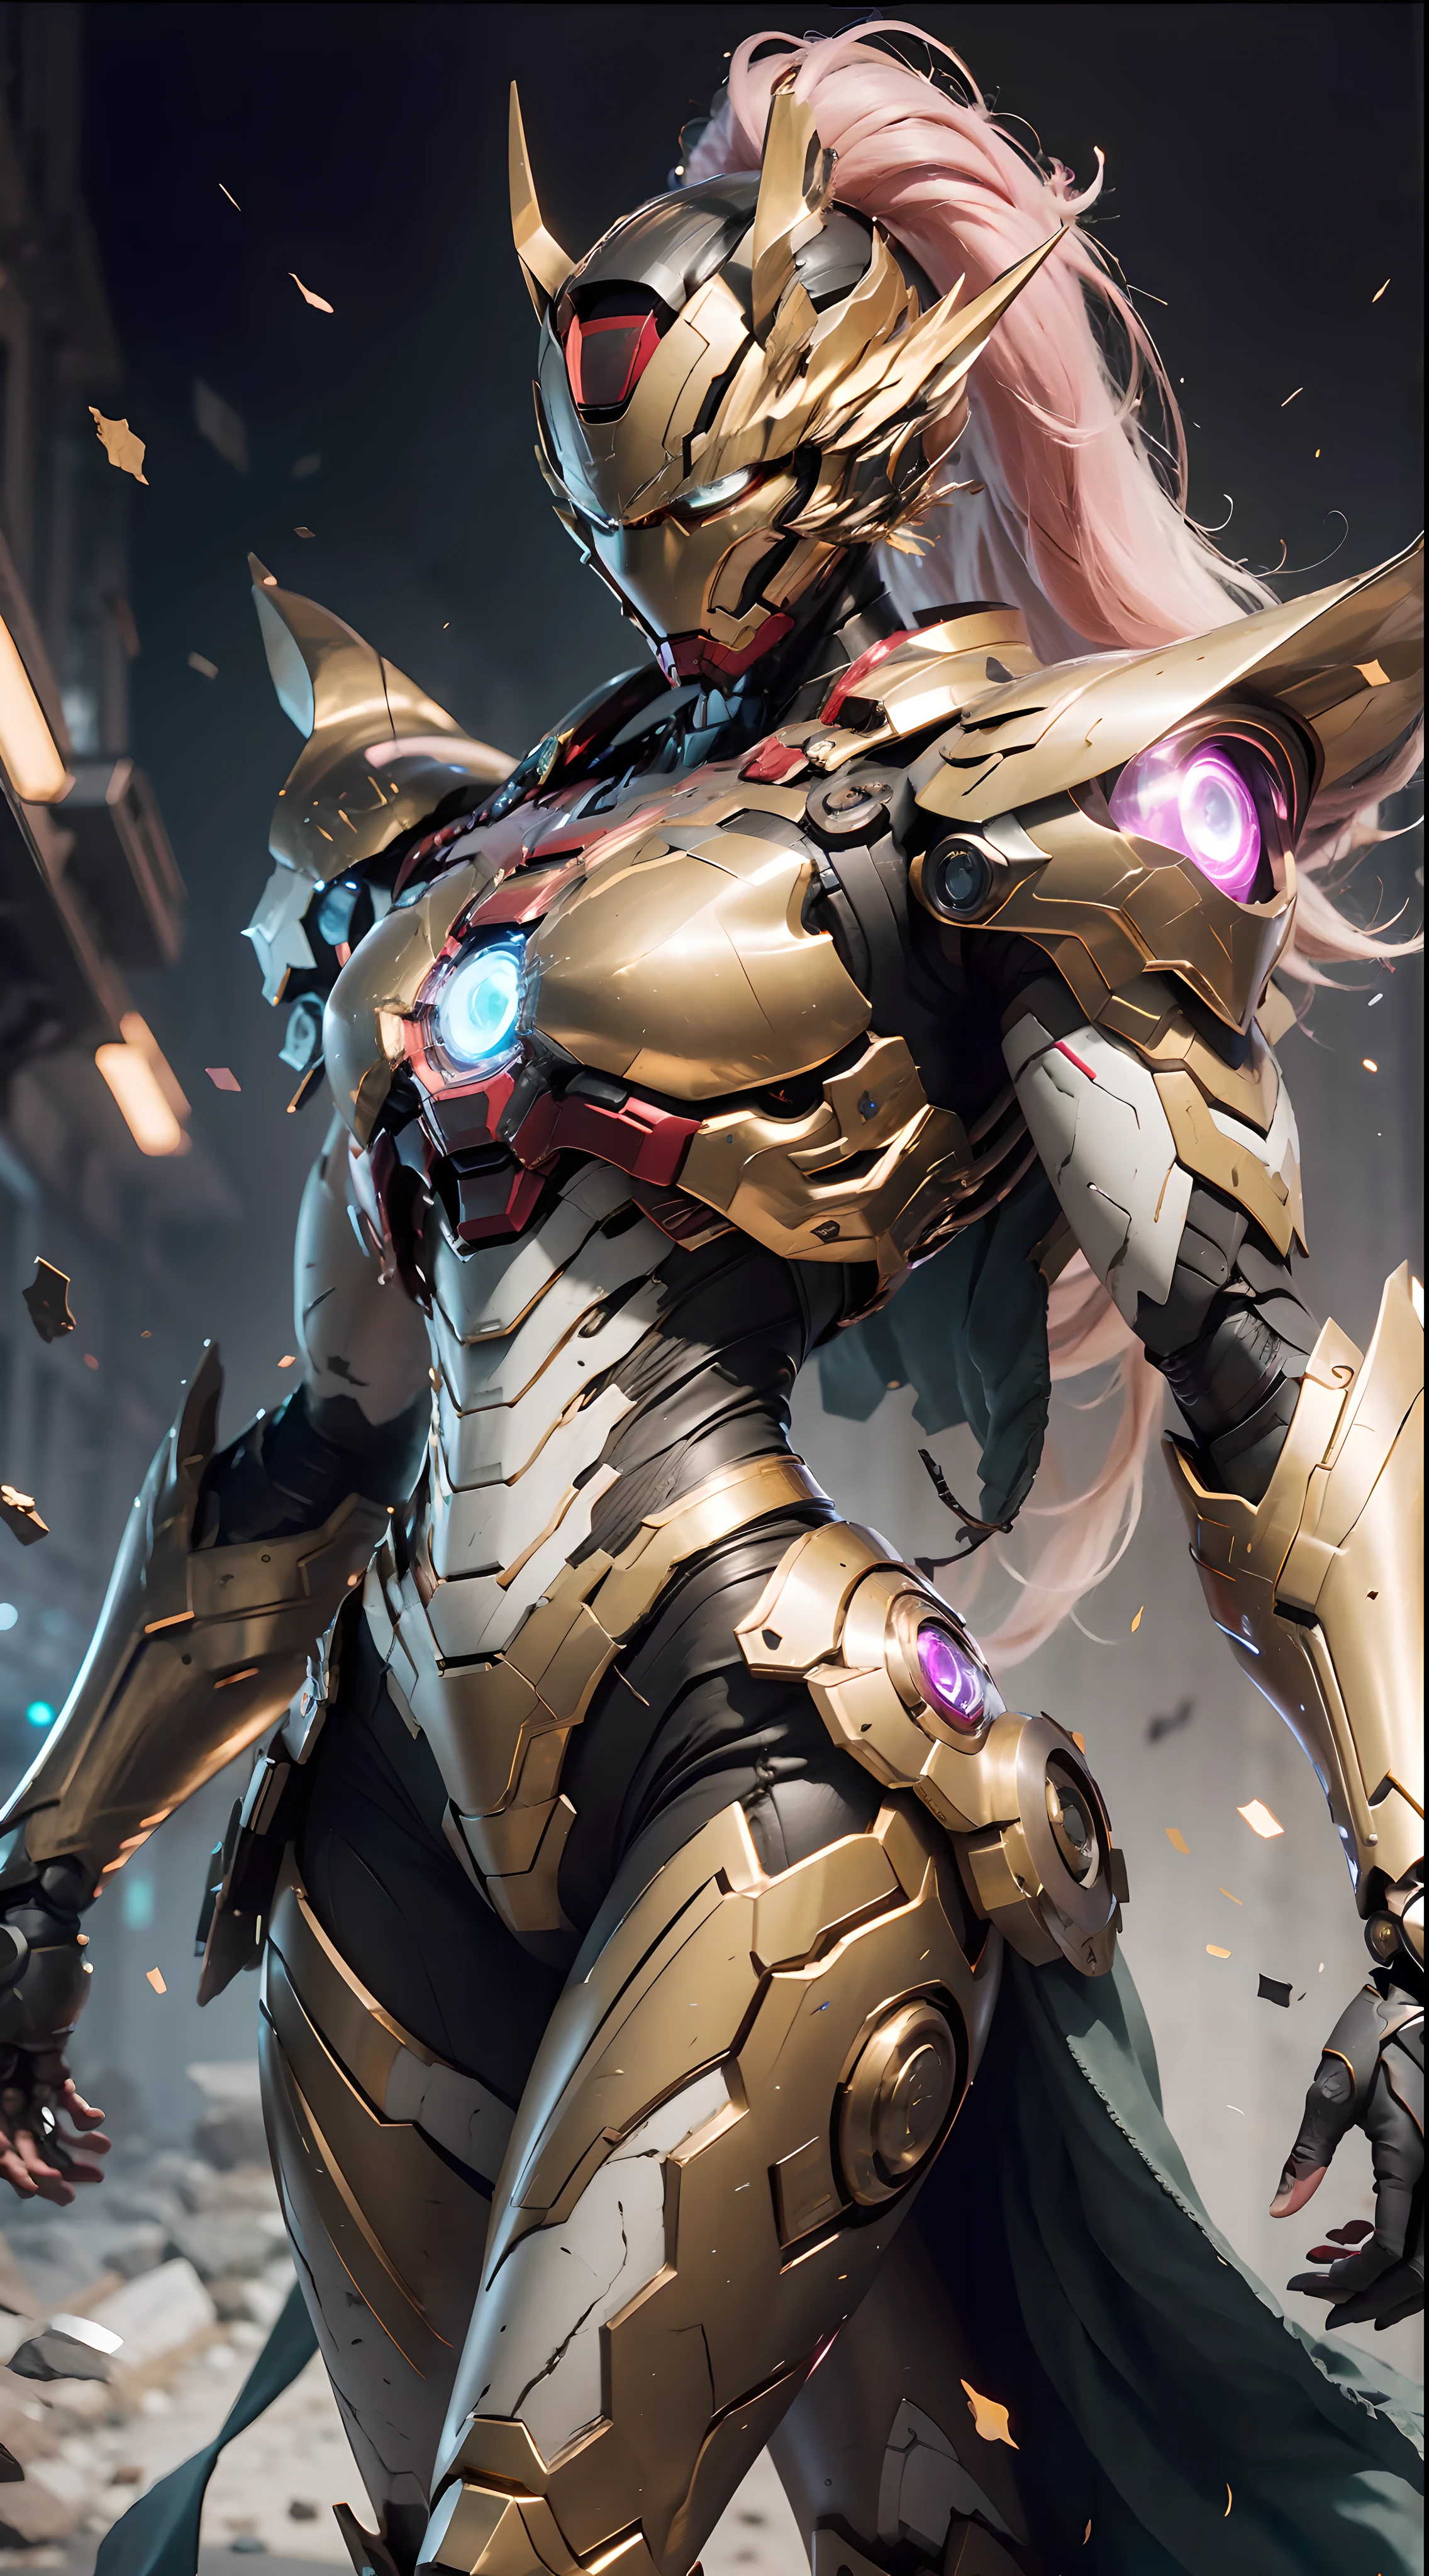 Uma foto de uma princesa dragão, Armadura de membro dourada de Saint Seiya, Peitoral do Homem de Ferro do filme Marvel, (up to 00 Gundam Exia: 1.5), (mecha) (mechanical) (armaduras), (perna aberta: 1.3), perfeito, (ângulo amplo), (fundo preto: 1.6), melhor qualidade, Obra de arte, super resolução, (Realidade: 1.4), 1 garota, Ombros nus, detalhes malucos, (dobras do quadril: 1.2), Parte inferior do peito, Peito lateral, estilo de motor irrealista, Efeito Boca, Lente estilo David La Chapelle, paleta bioluminescente: azul claro, Luz Dourada, luz rosa, Branco brilhante, ângulo amplo, super bem, natureza morta cinematográfica, vibrante, estilo sakimichan, olhos perfeitos, A mais alta qualidade de imagem 8K, inspirado em Harry Winston, Obra-prima de fotografia Canon EOS R 6" Caos 50,--, Sob a verruga ocular, rastreamento de raios, surrealismo, pele texturizada --s2